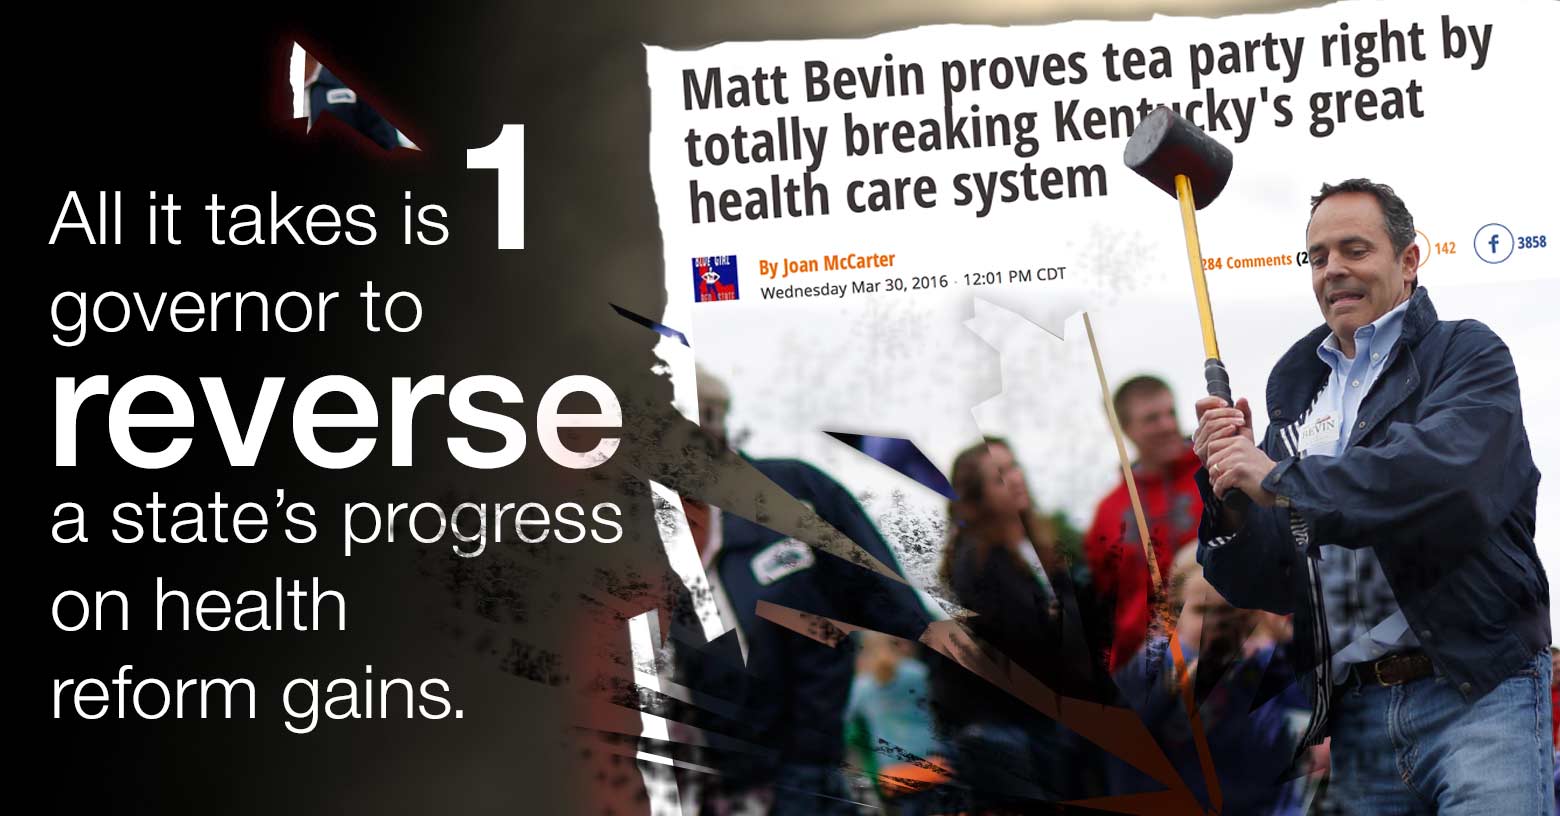 Gov Matt Bevin destroys Kentucky's health reform progress.